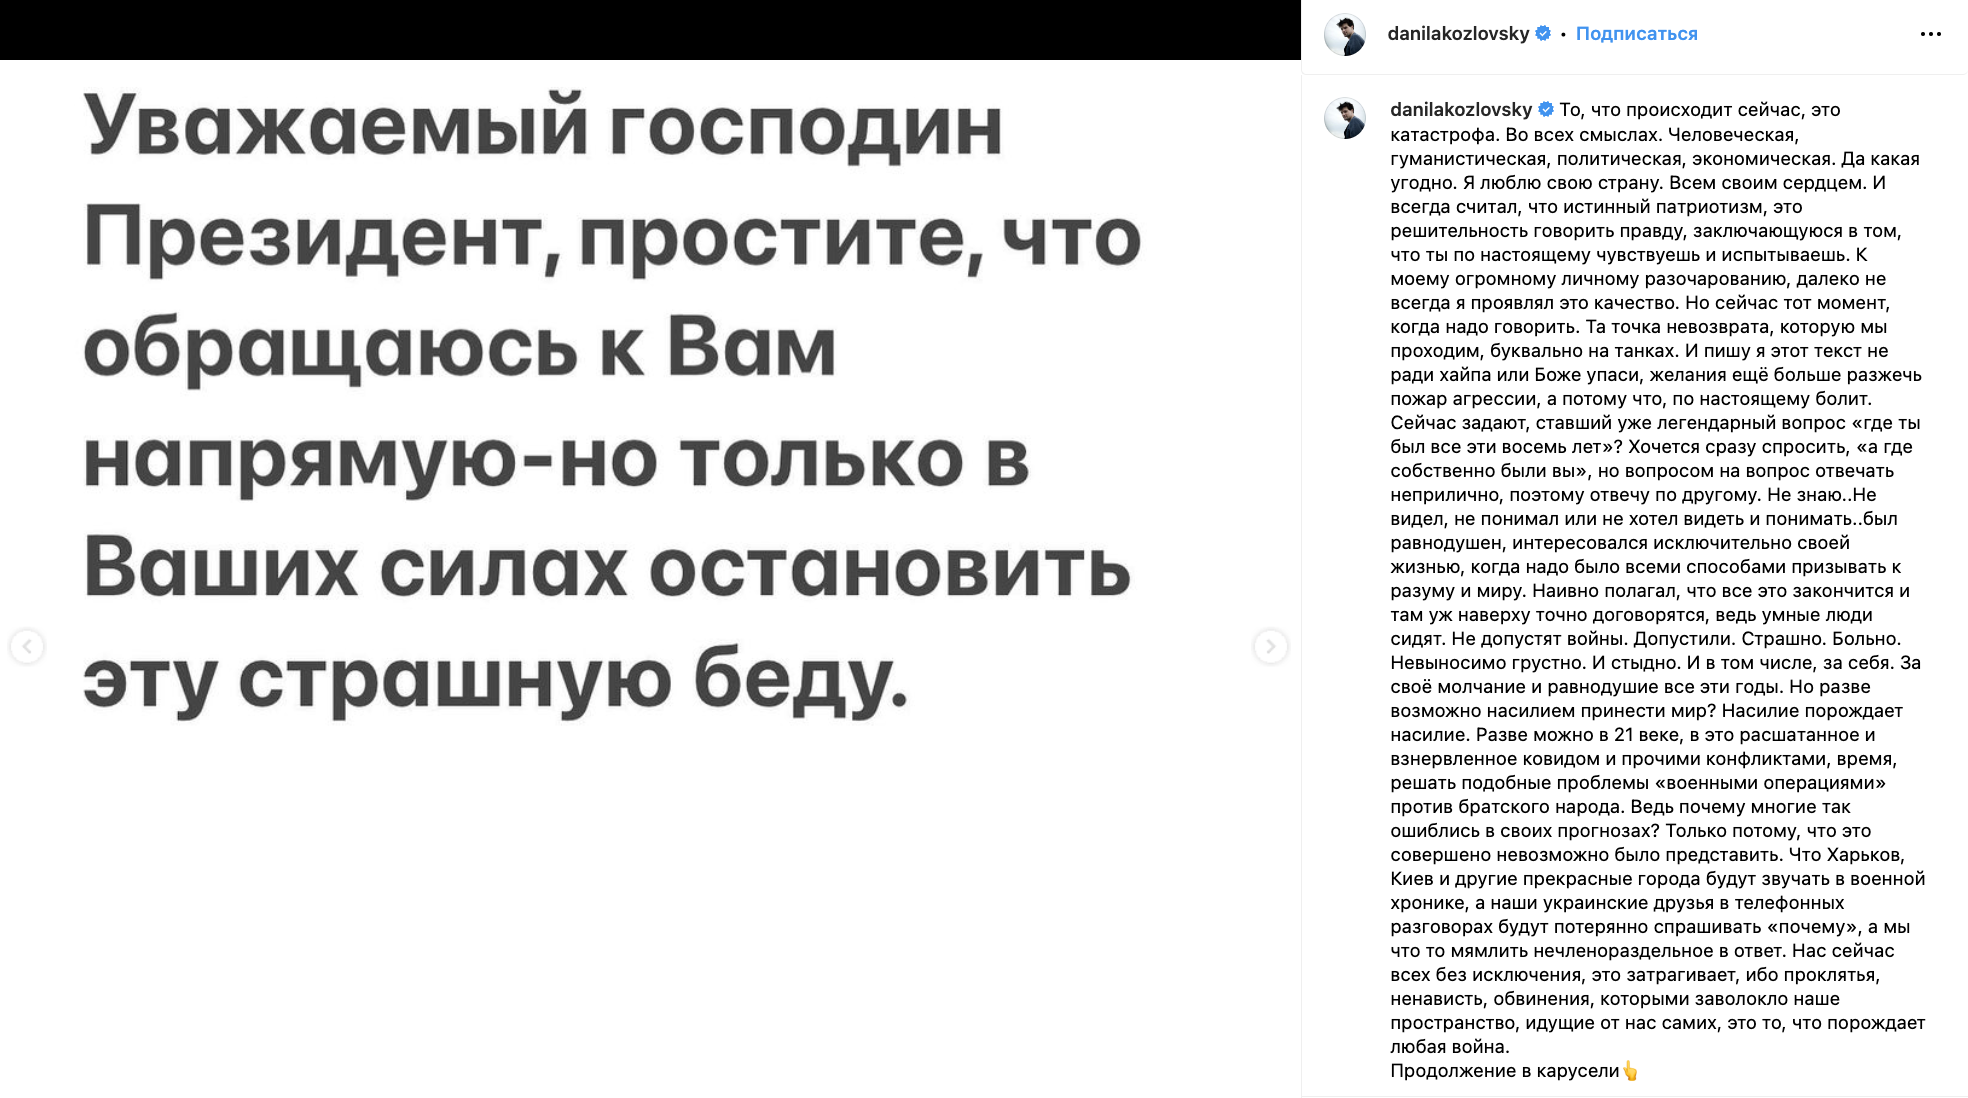 Но радоваться не надо: как осудивший войну российский актер Козловский закрыл рот путинистам и отсудил 1 рубль за свою честь